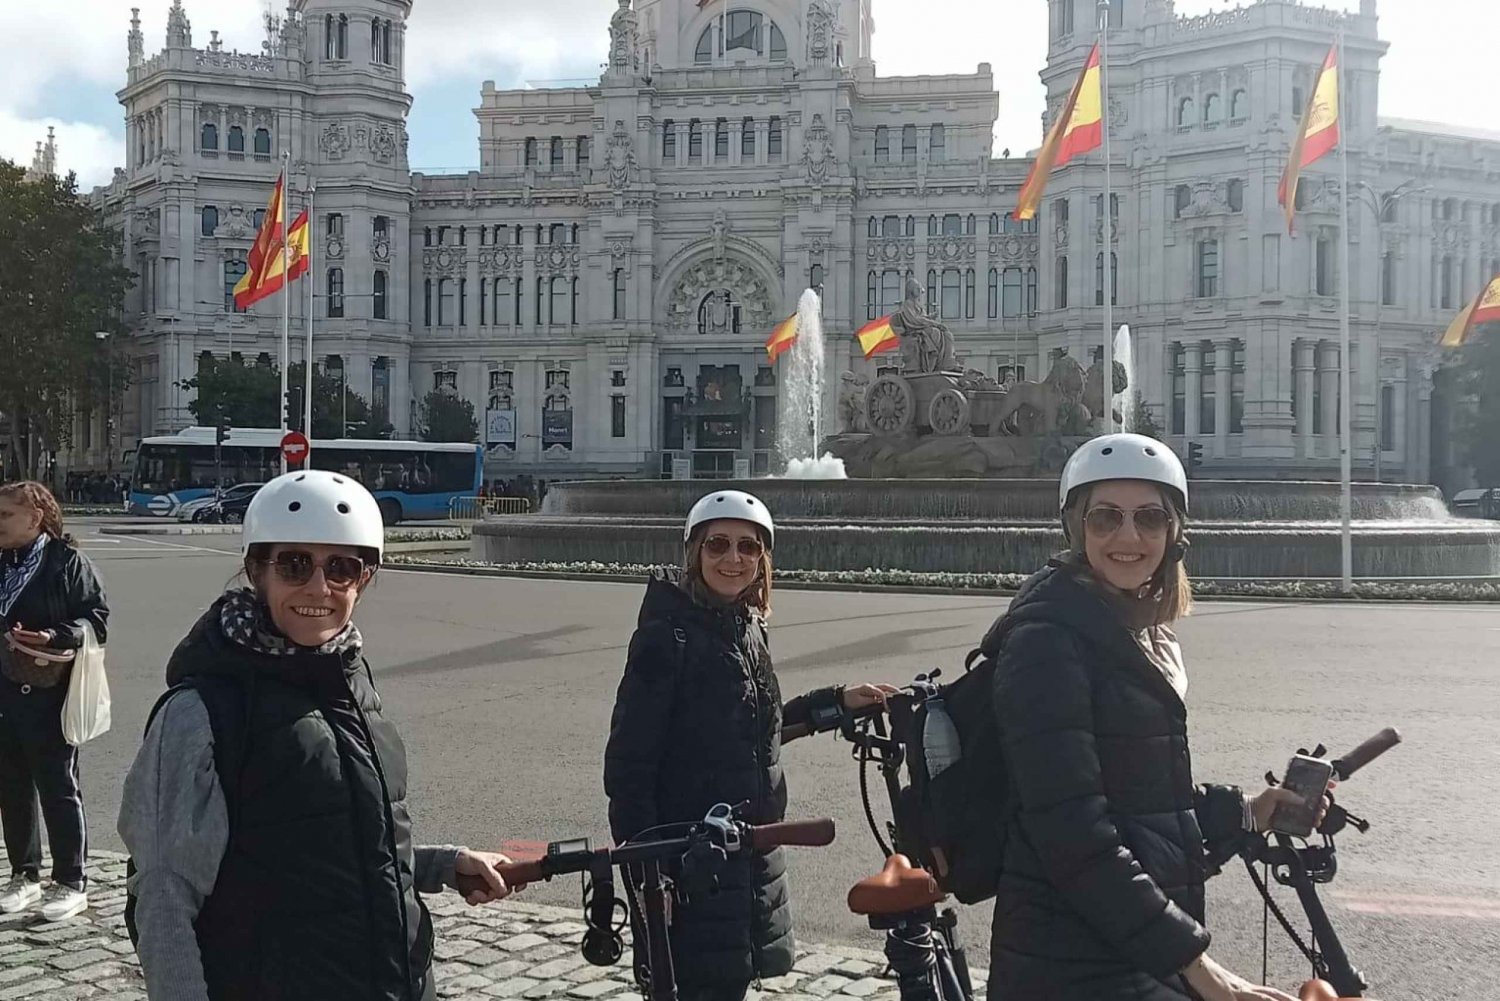 Cały Madryt: Prywatna wycieczka rowerem elektrycznym po mieście